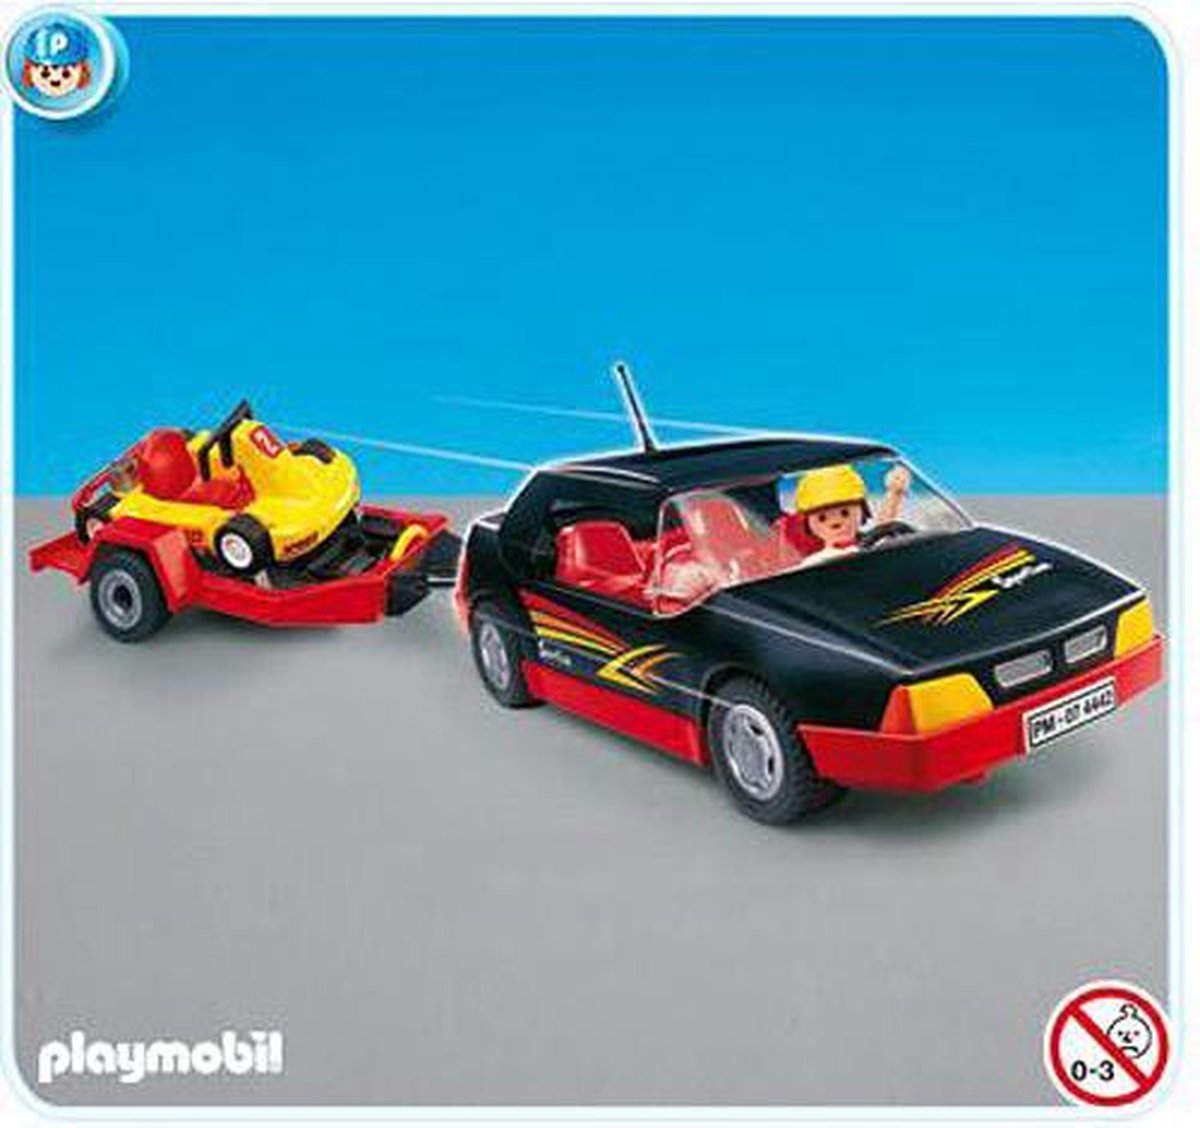 Playmobil Raceauto met Go-Kart - 4442 | bol.com